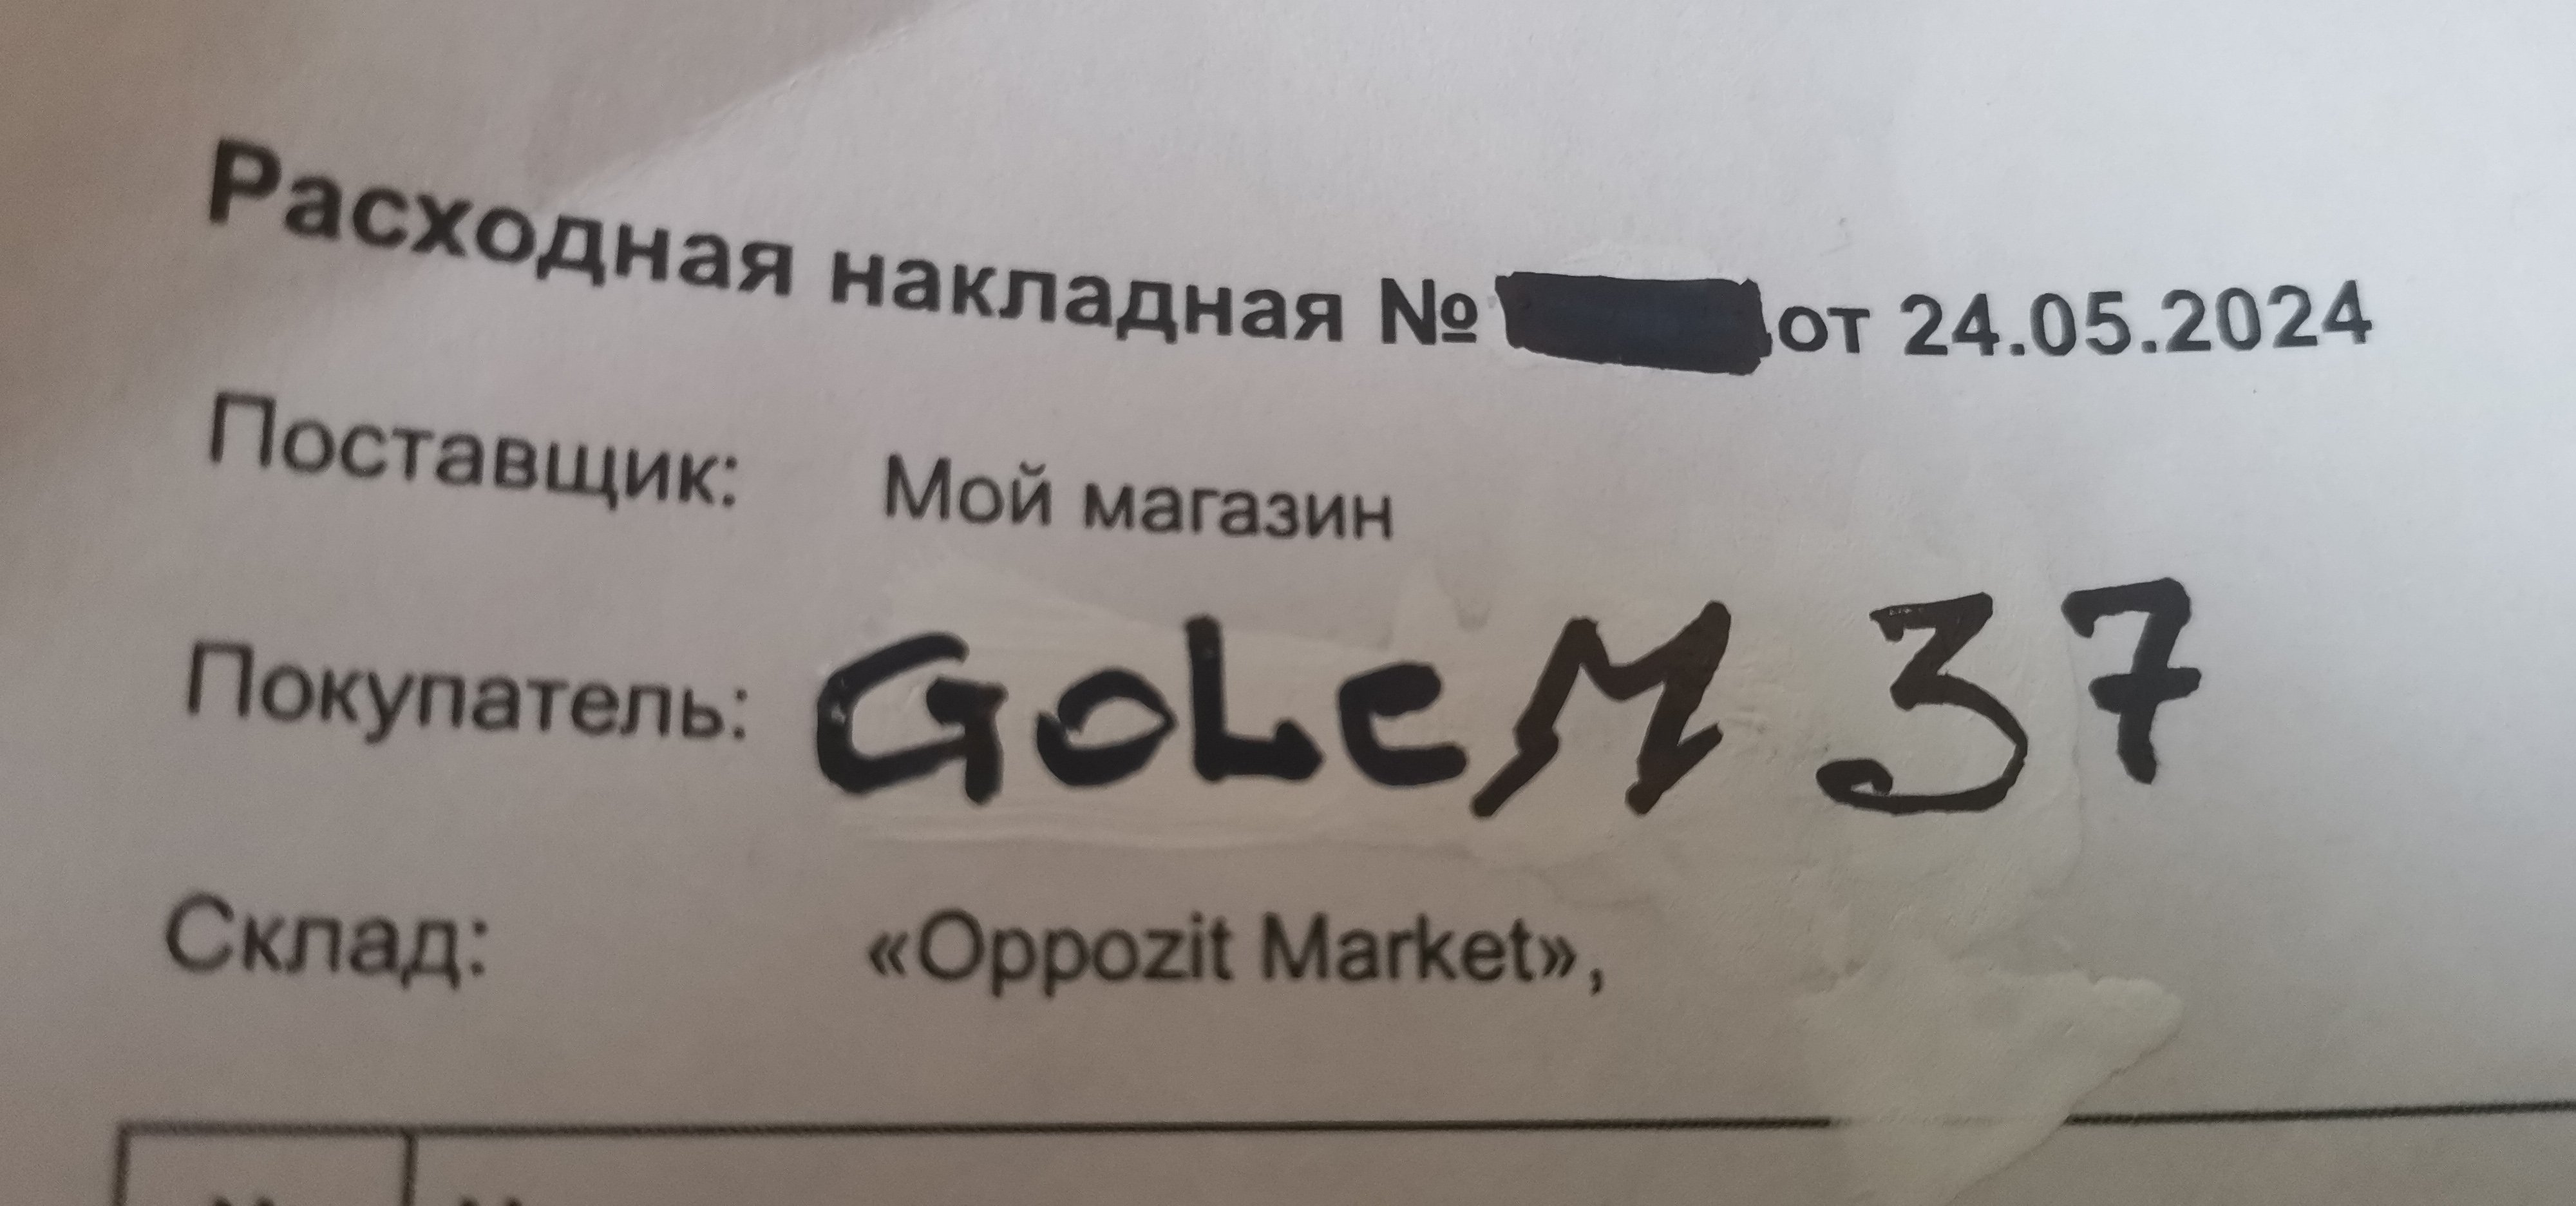 Посылка от "Oppozit market" из Первоуральска для Урала